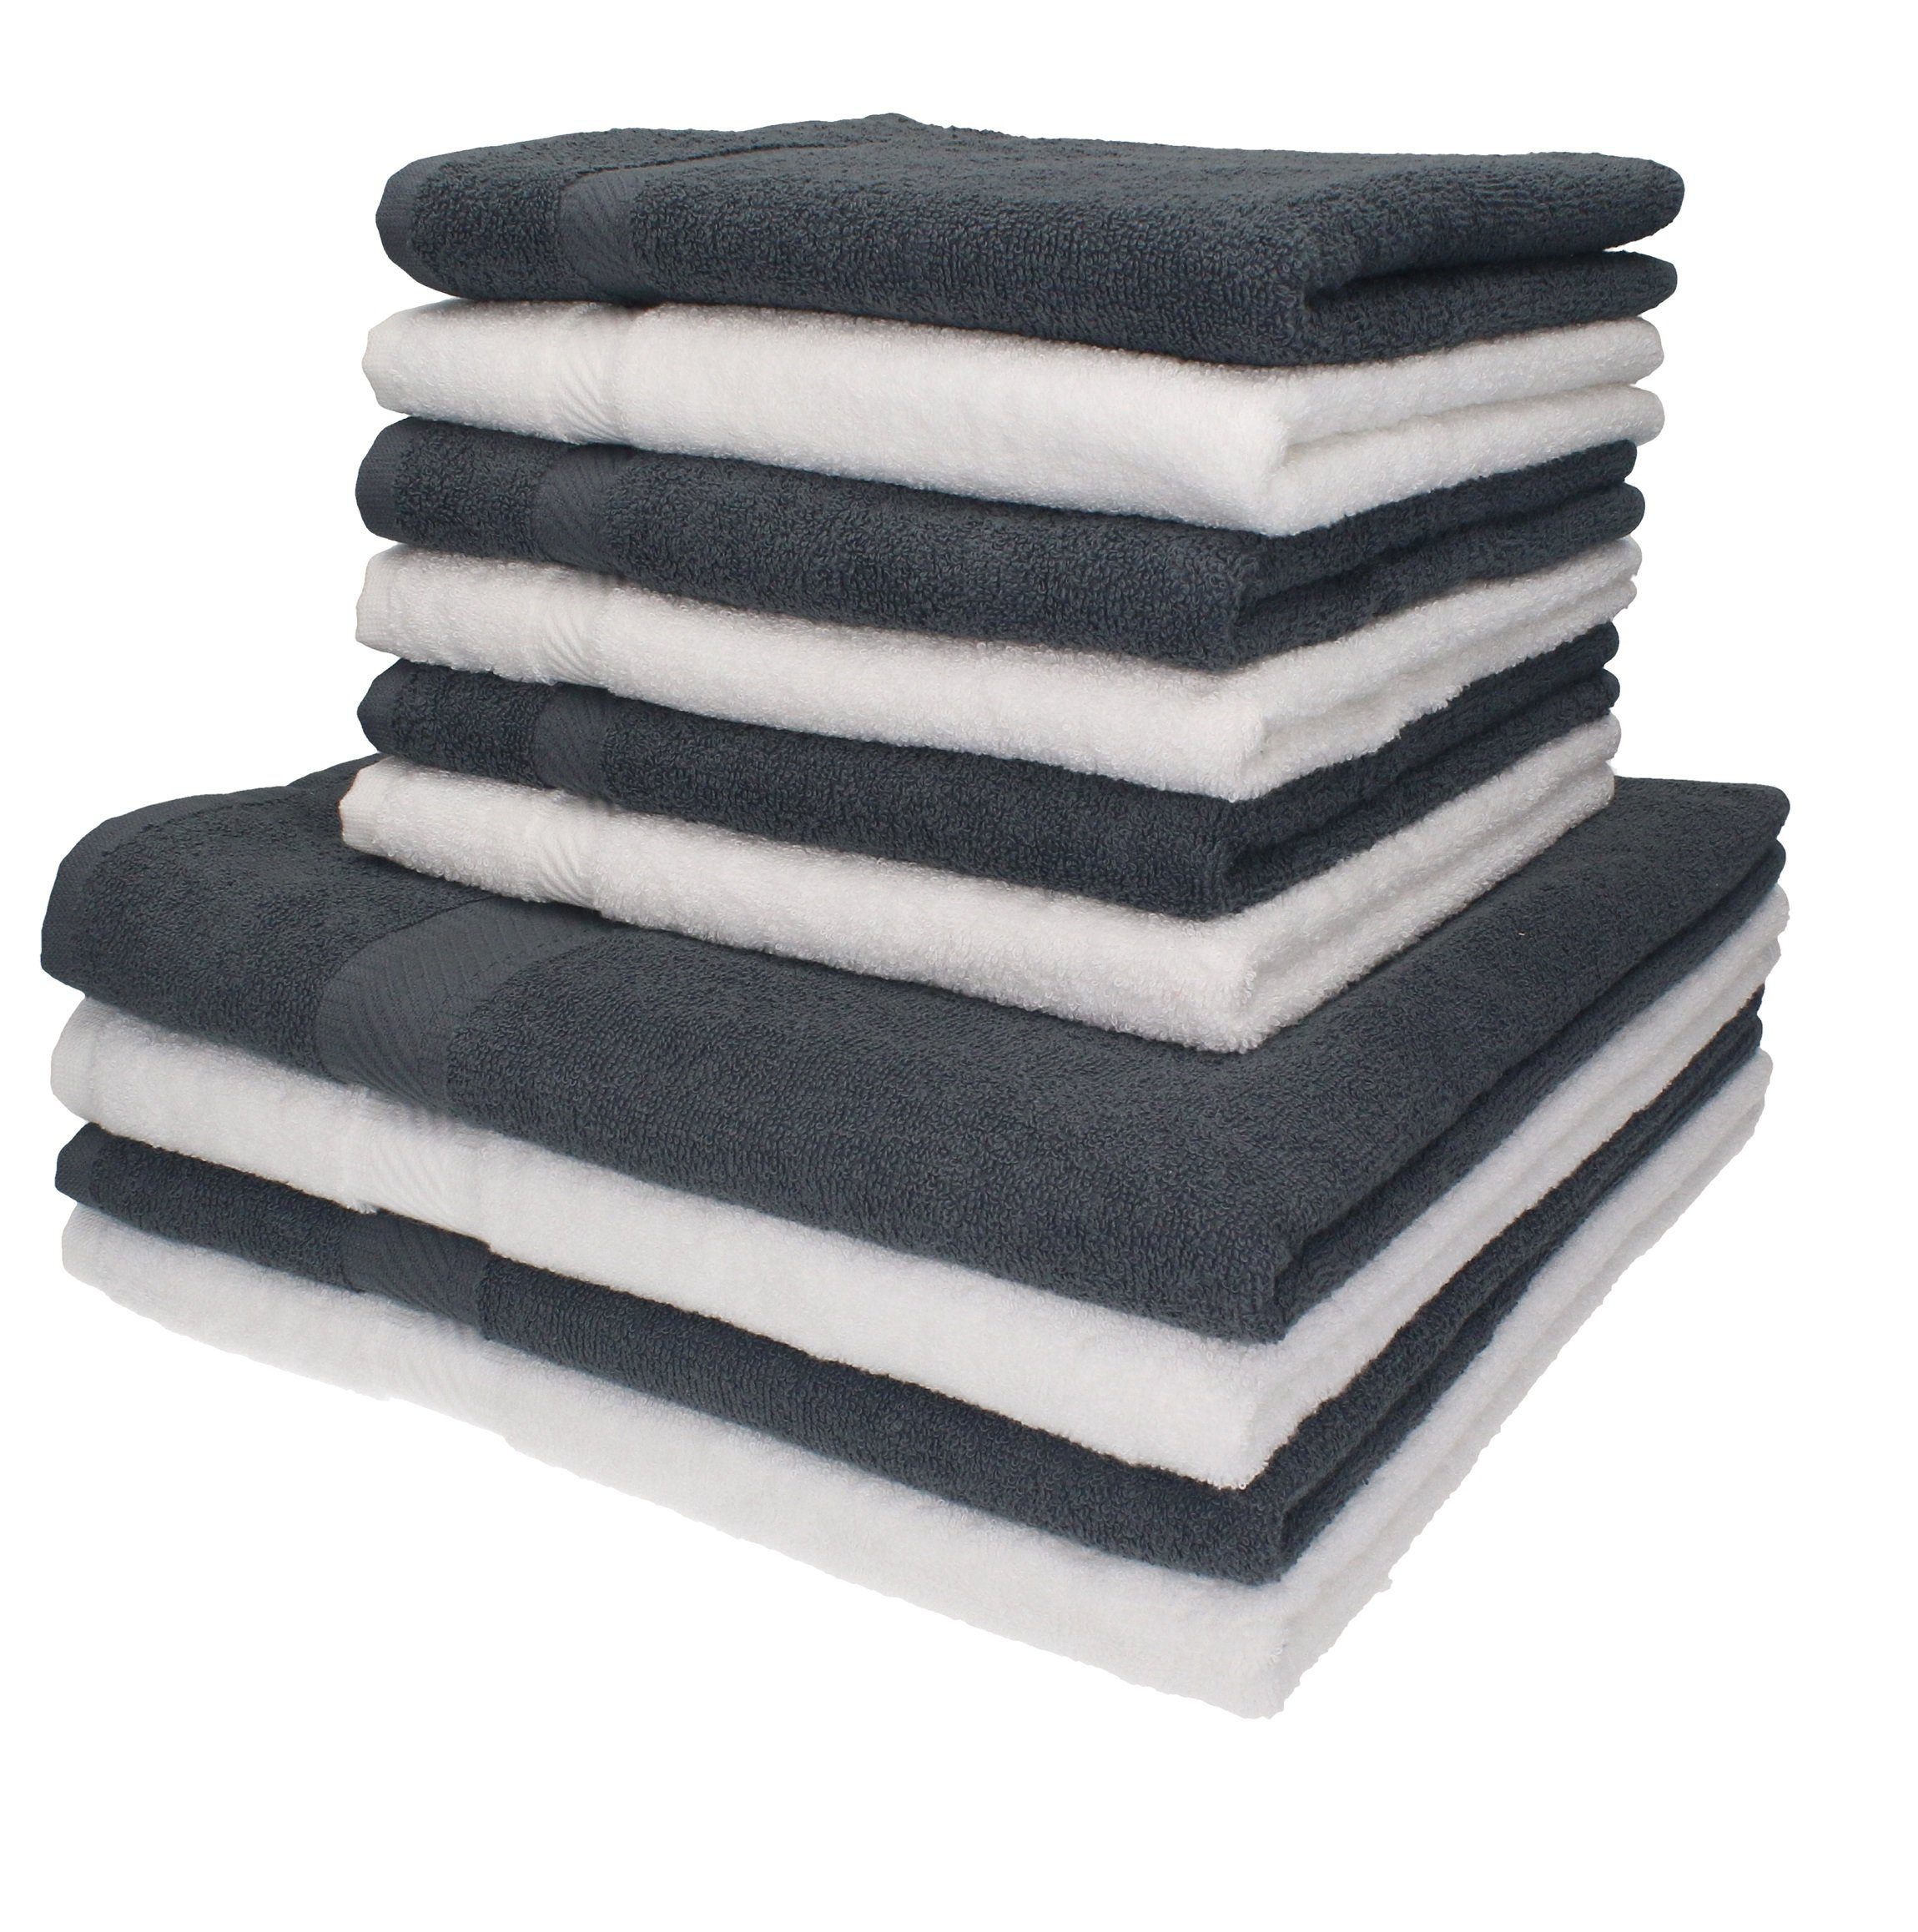 Betz Handtuch Set 10-tlg. Set Palermo 4 Duschtücher 6 Handtücher Farbe weiß/anthrazit, 100% Baumwolle